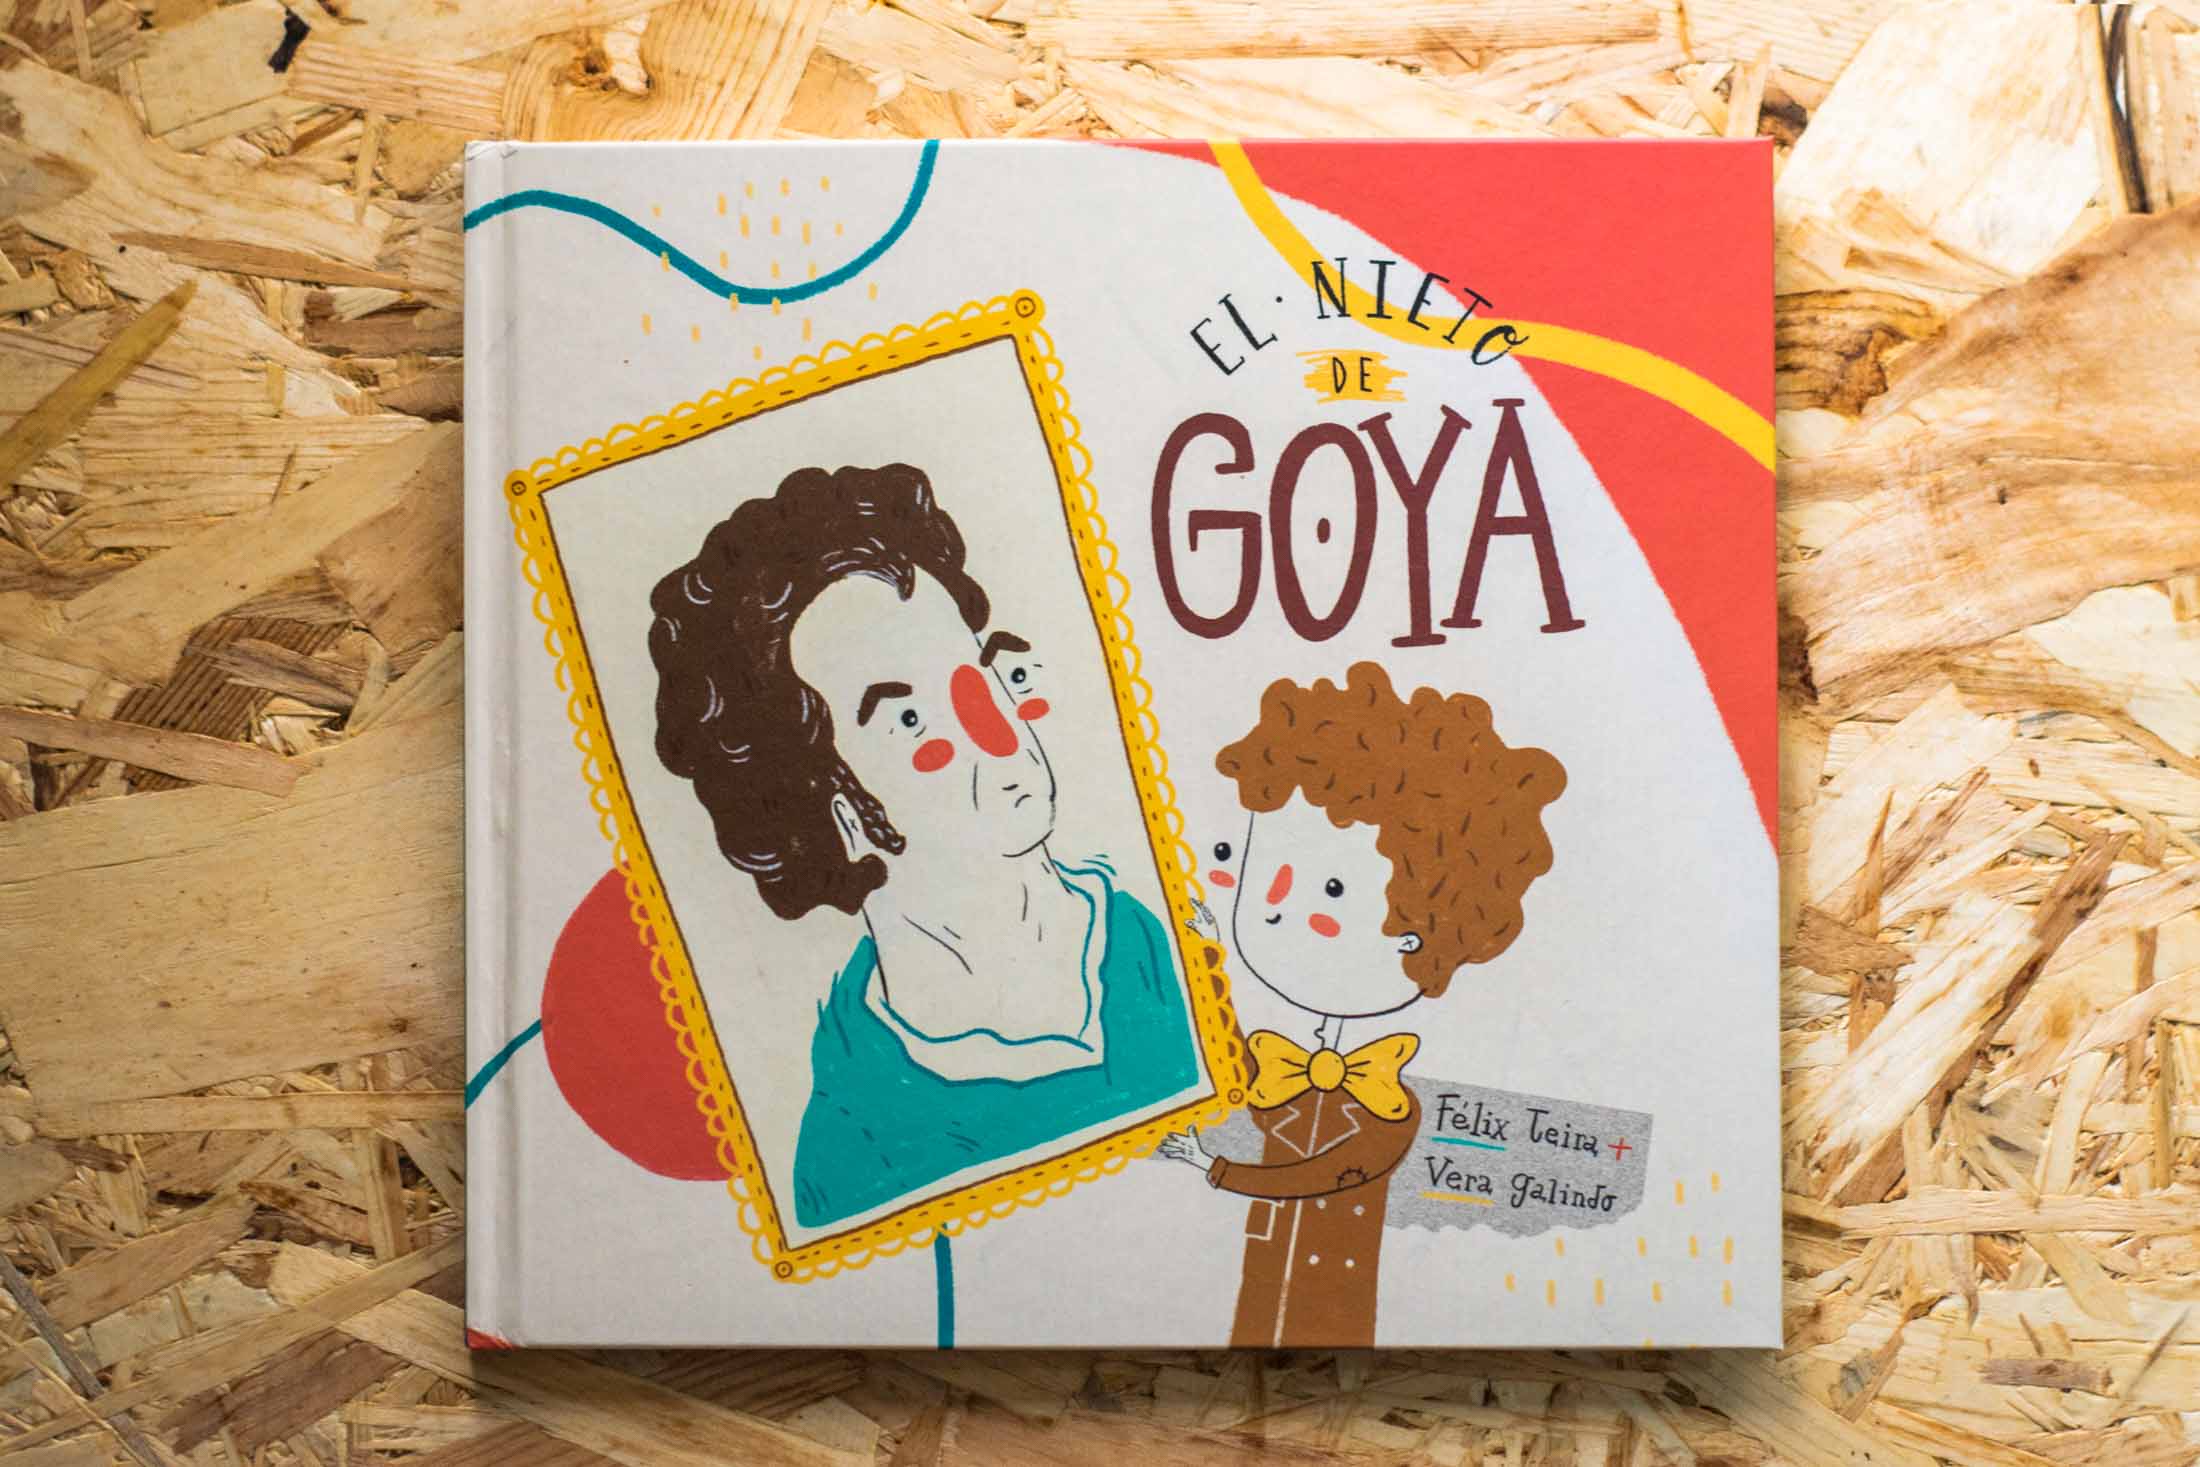 El Nieto de Goya · Félix Teira y Vera Galindo · Álbum ilustrado sobre Goya en su 275 aniversario editado por la Comarca Campo de Belchite